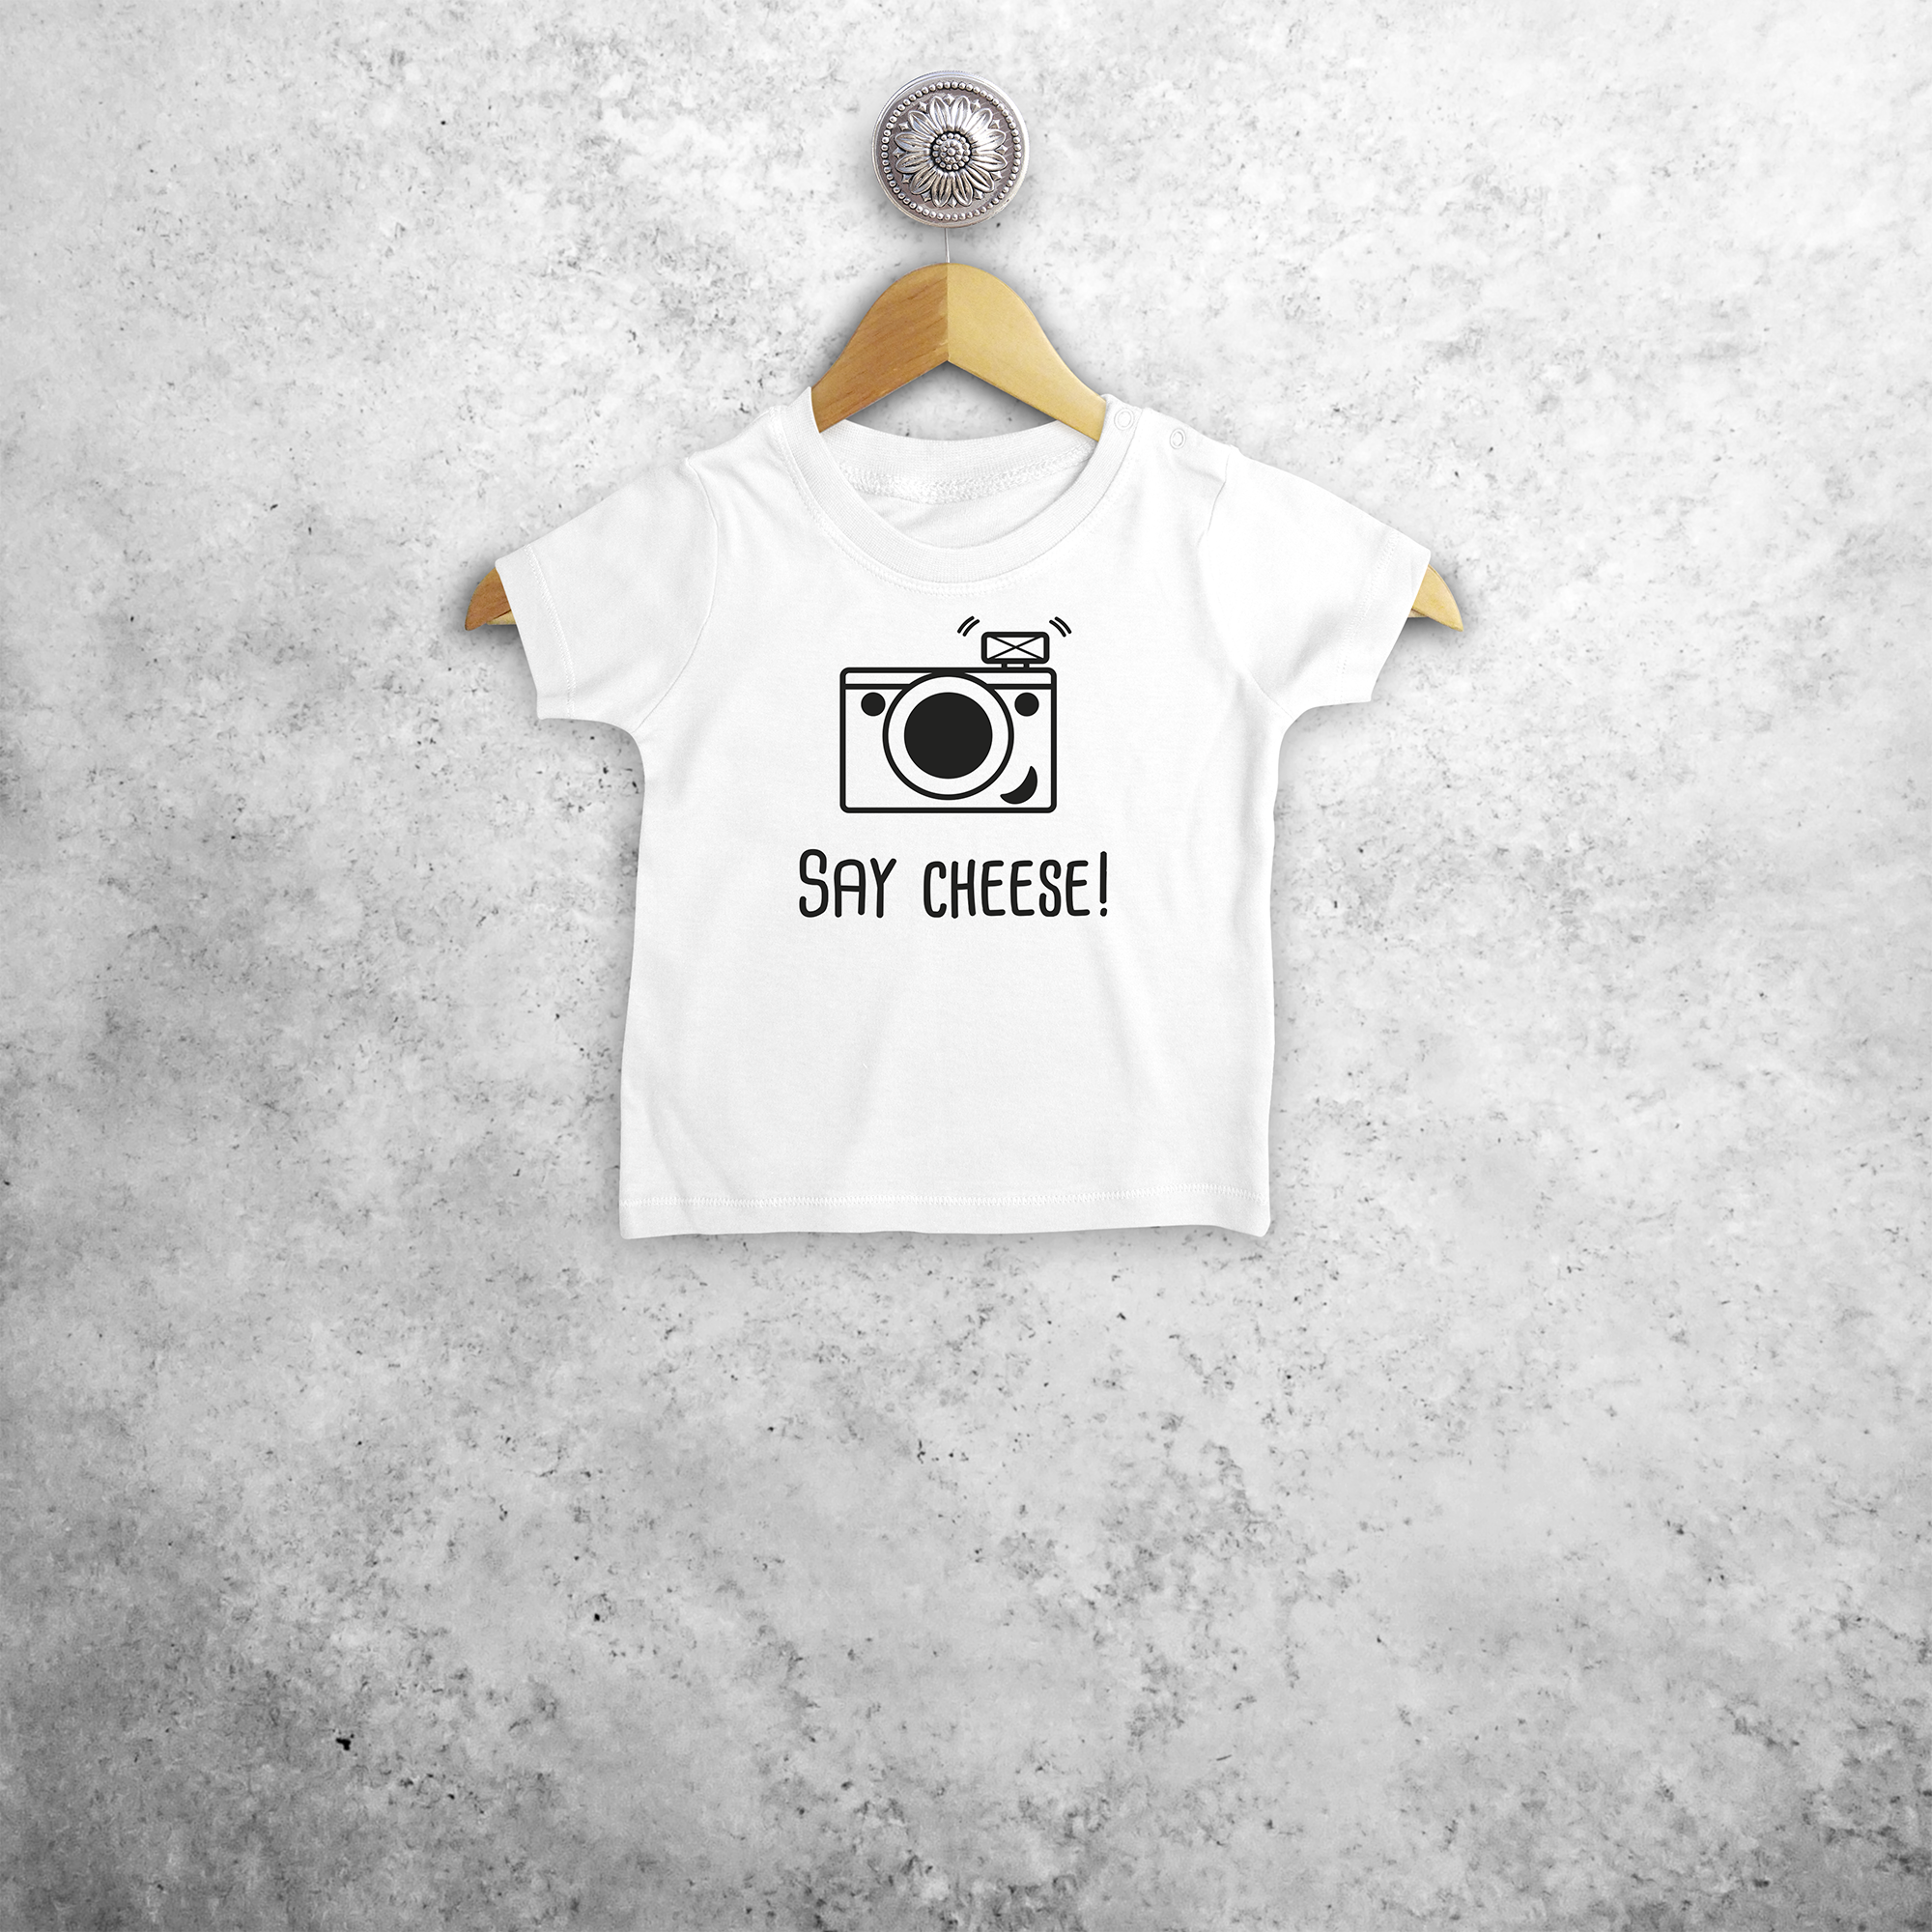 'Say Cheese' baby shortsleeve shirt